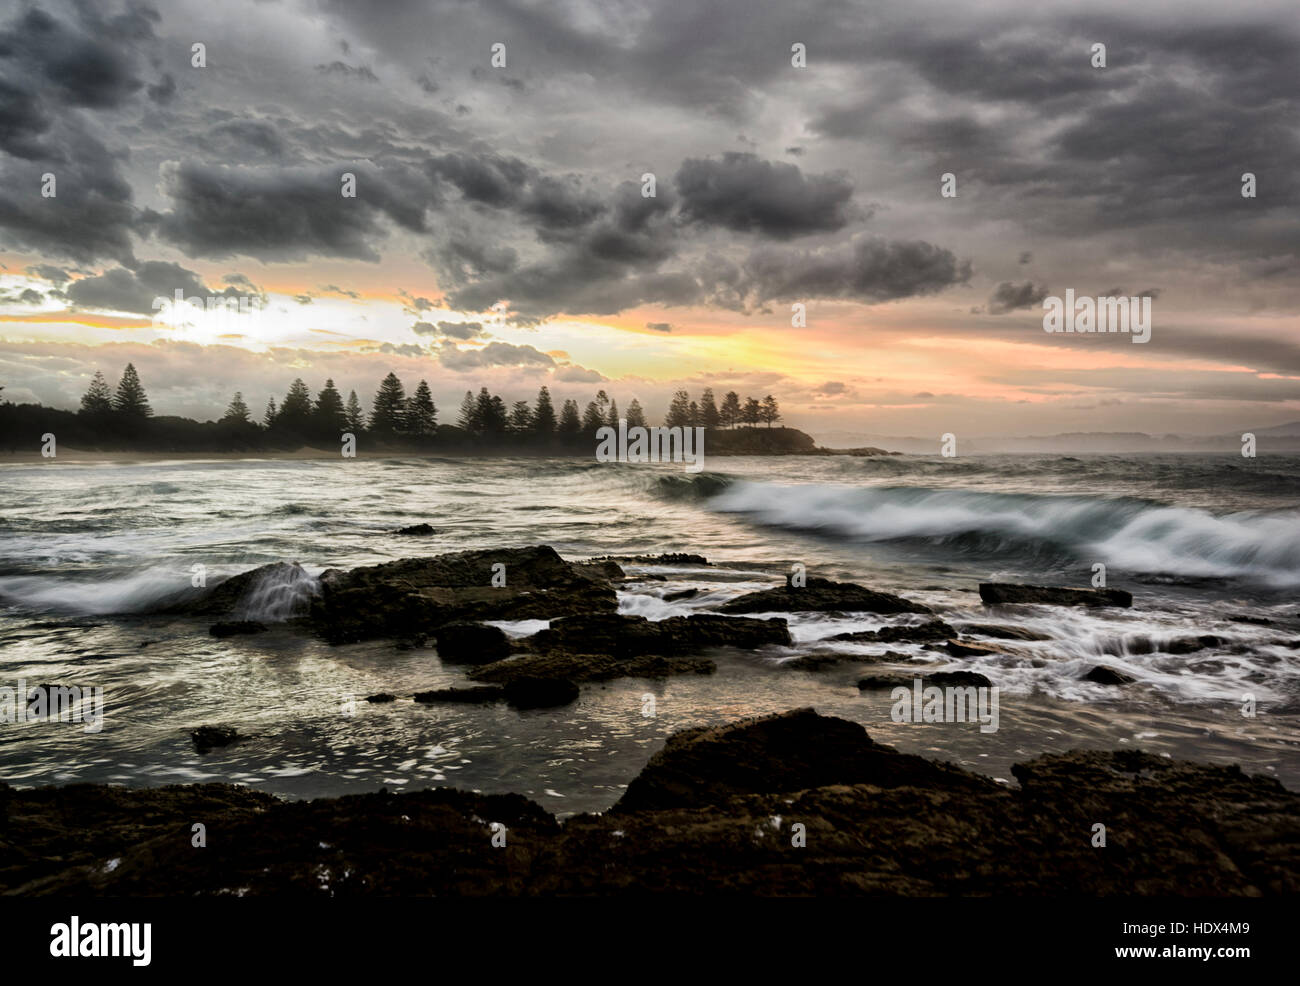 Dramatische stimmungsvollen Sonnenuntergang über große Wellen am Strand von Bermagui, South Coast, New South Wales, NSW, Australien Stockfoto